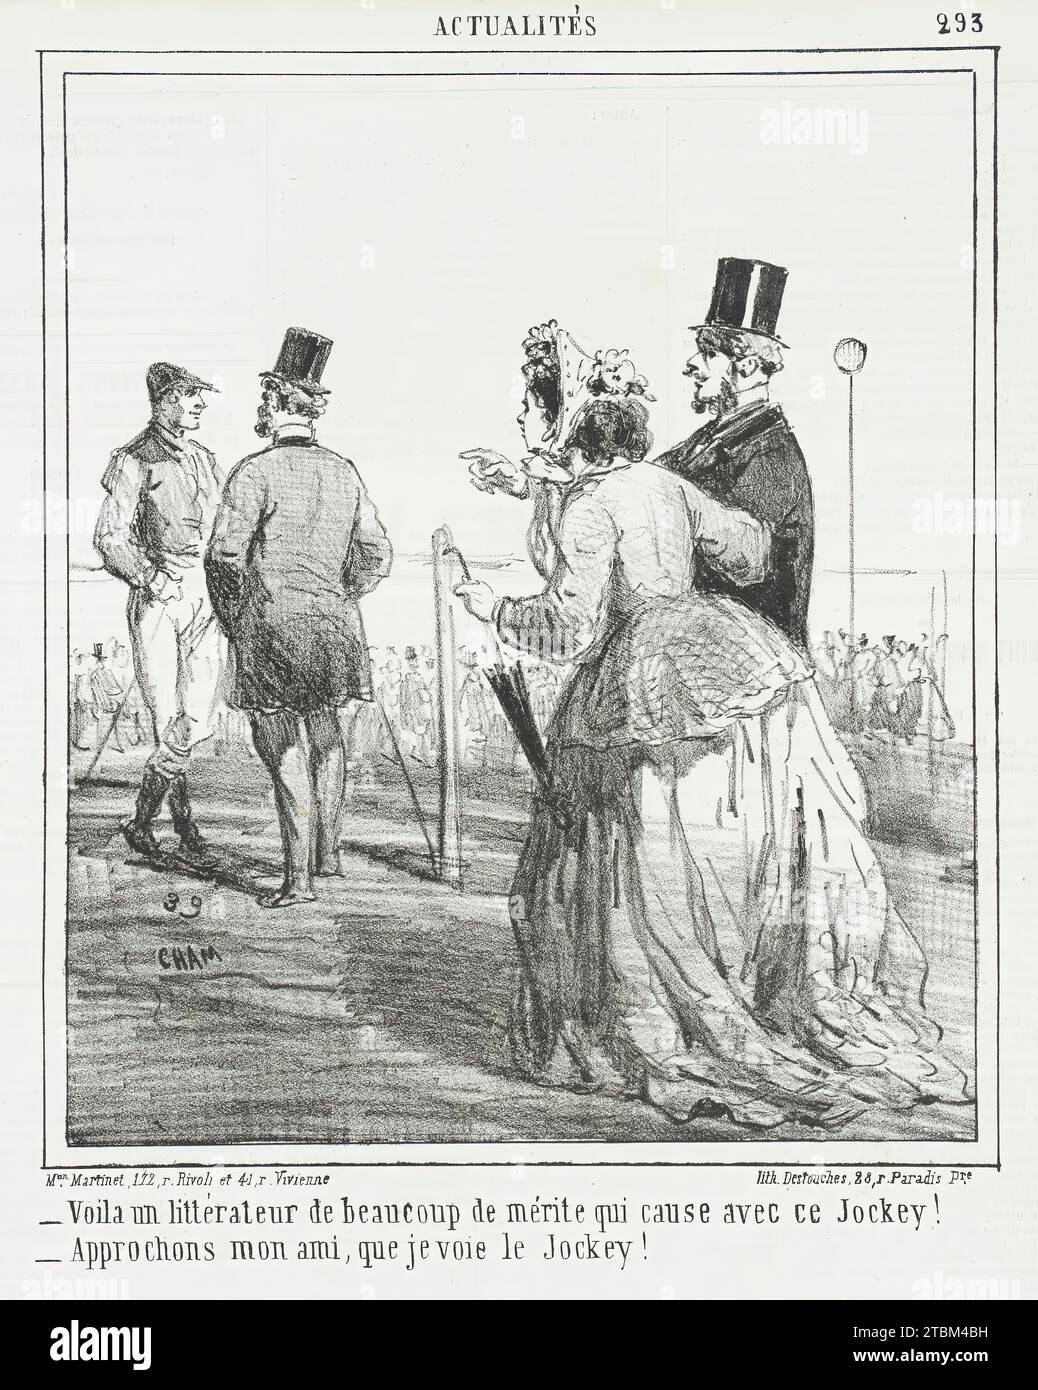 Voila un litt&#xe9;rateur de beaucoup de m&#xe9;rite qui cause avec ce Jockey! -Approchons mon ami, que je voie le Jockey!, 1865. From Actualit&#xe9;s. Stock Photo